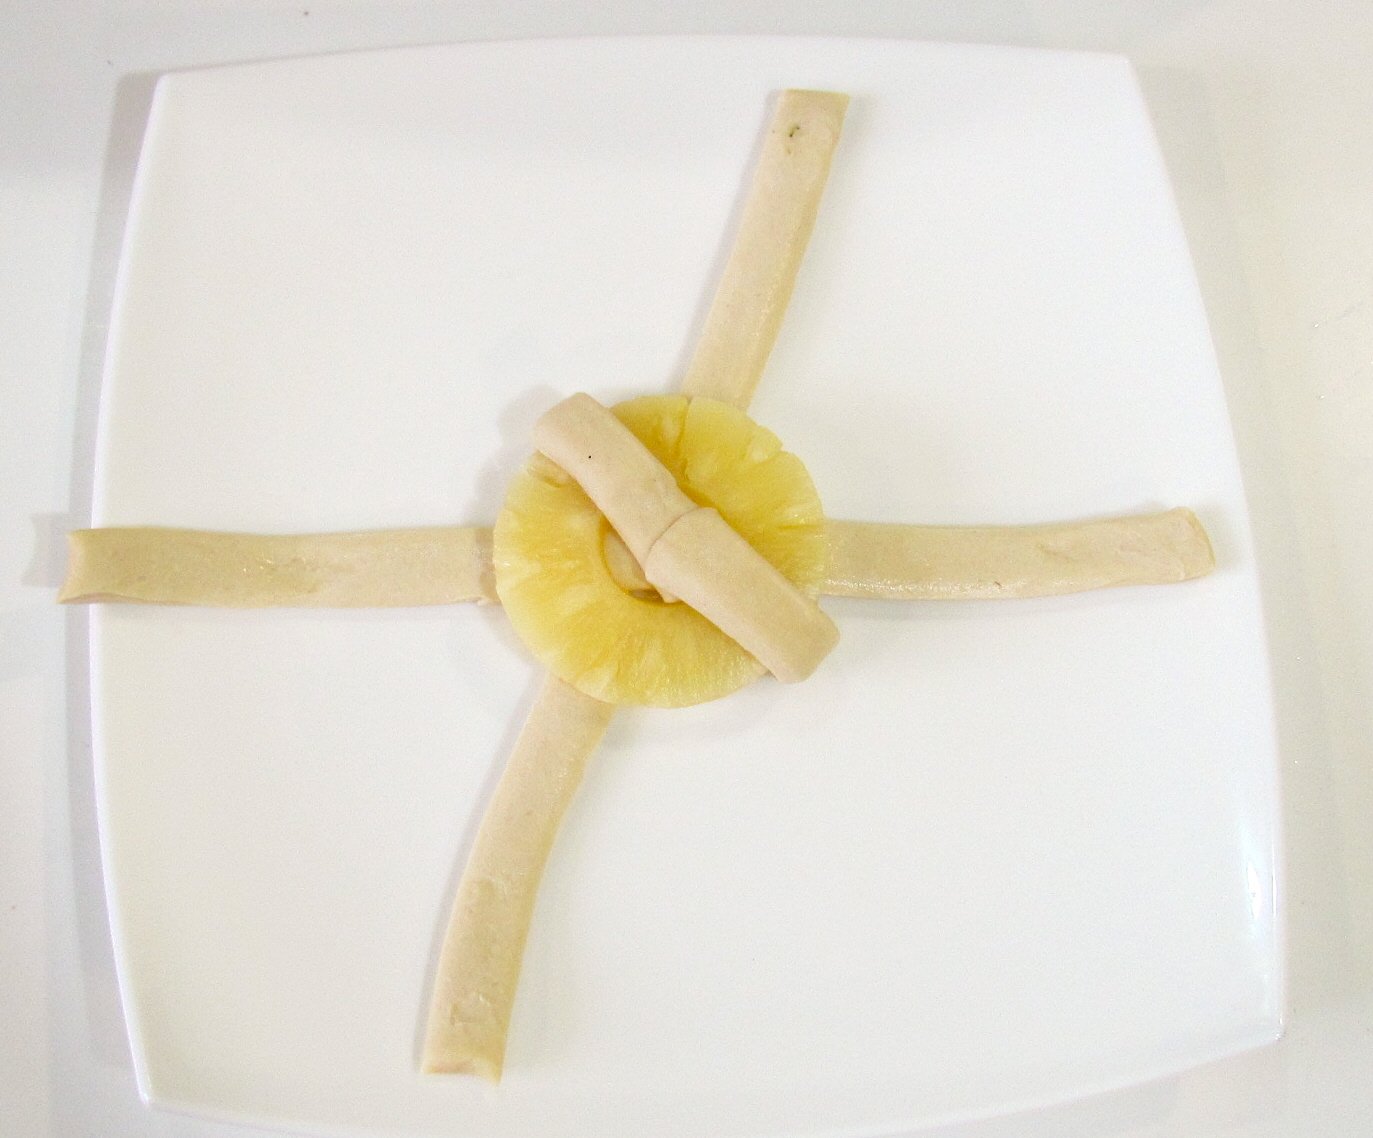 Bułeczki deserowe z krążkami ananasa z puszki (piekarnik)